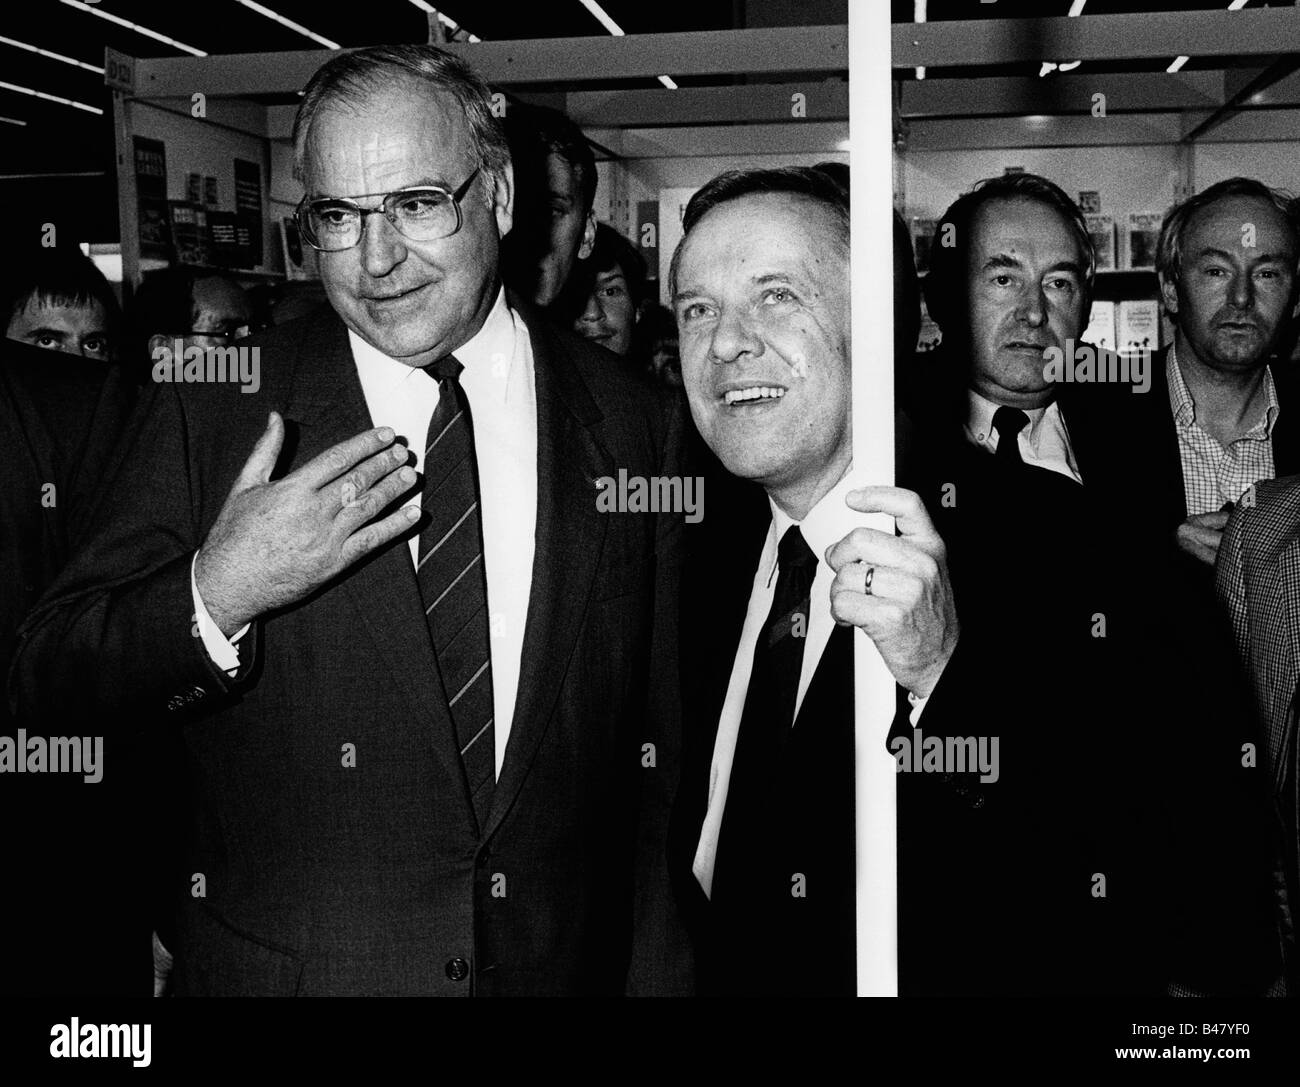 Kohl, Helmut, * 3.4.1930, deutscher Politiker (CDU), Kanzler von Deutschland 1982 - 1998, halbe Länge, mit Walter Wallmann, Bürgermeister von Frankfurt am Main, Buchmesse, Oktober 1985, Stockfoto